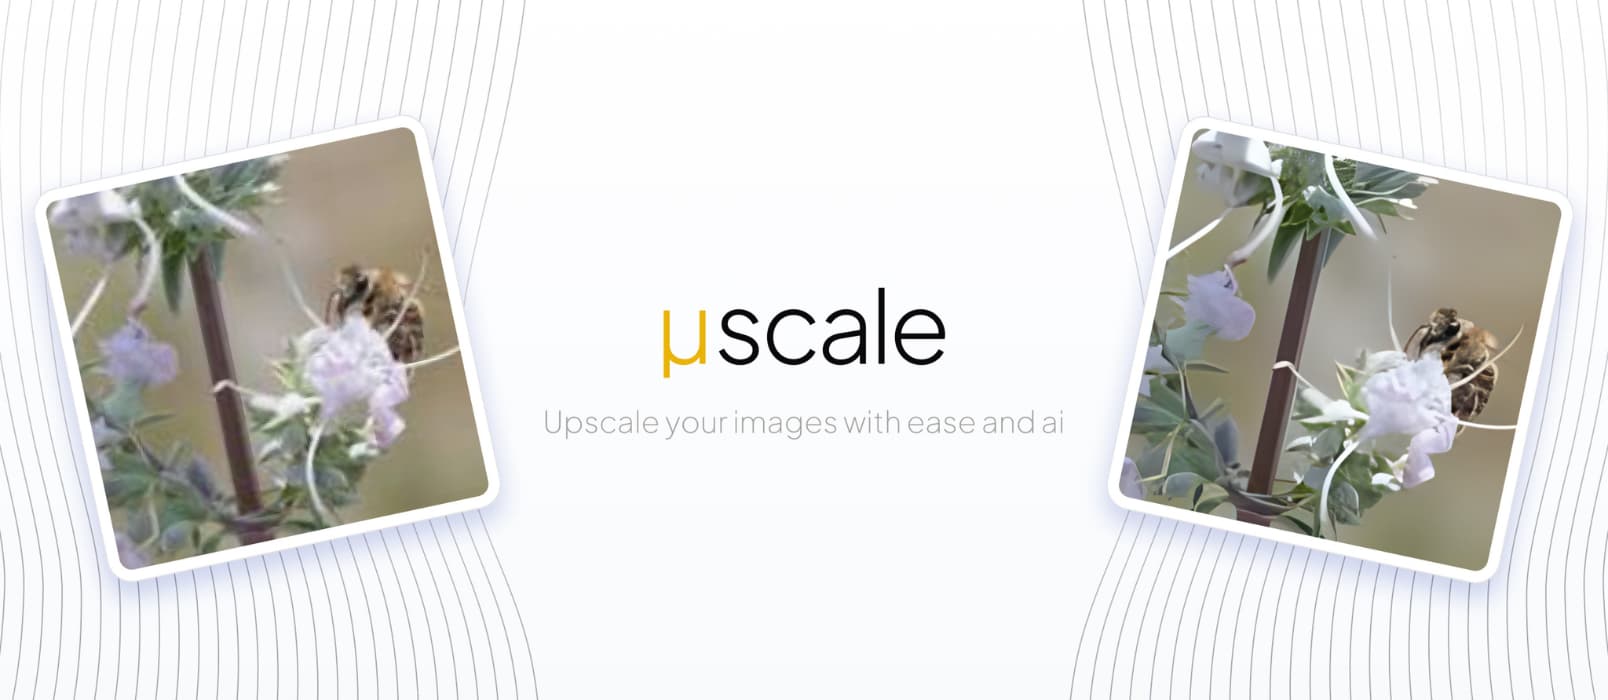 μScale - 利用 AI 算法，将图像放大 4 倍